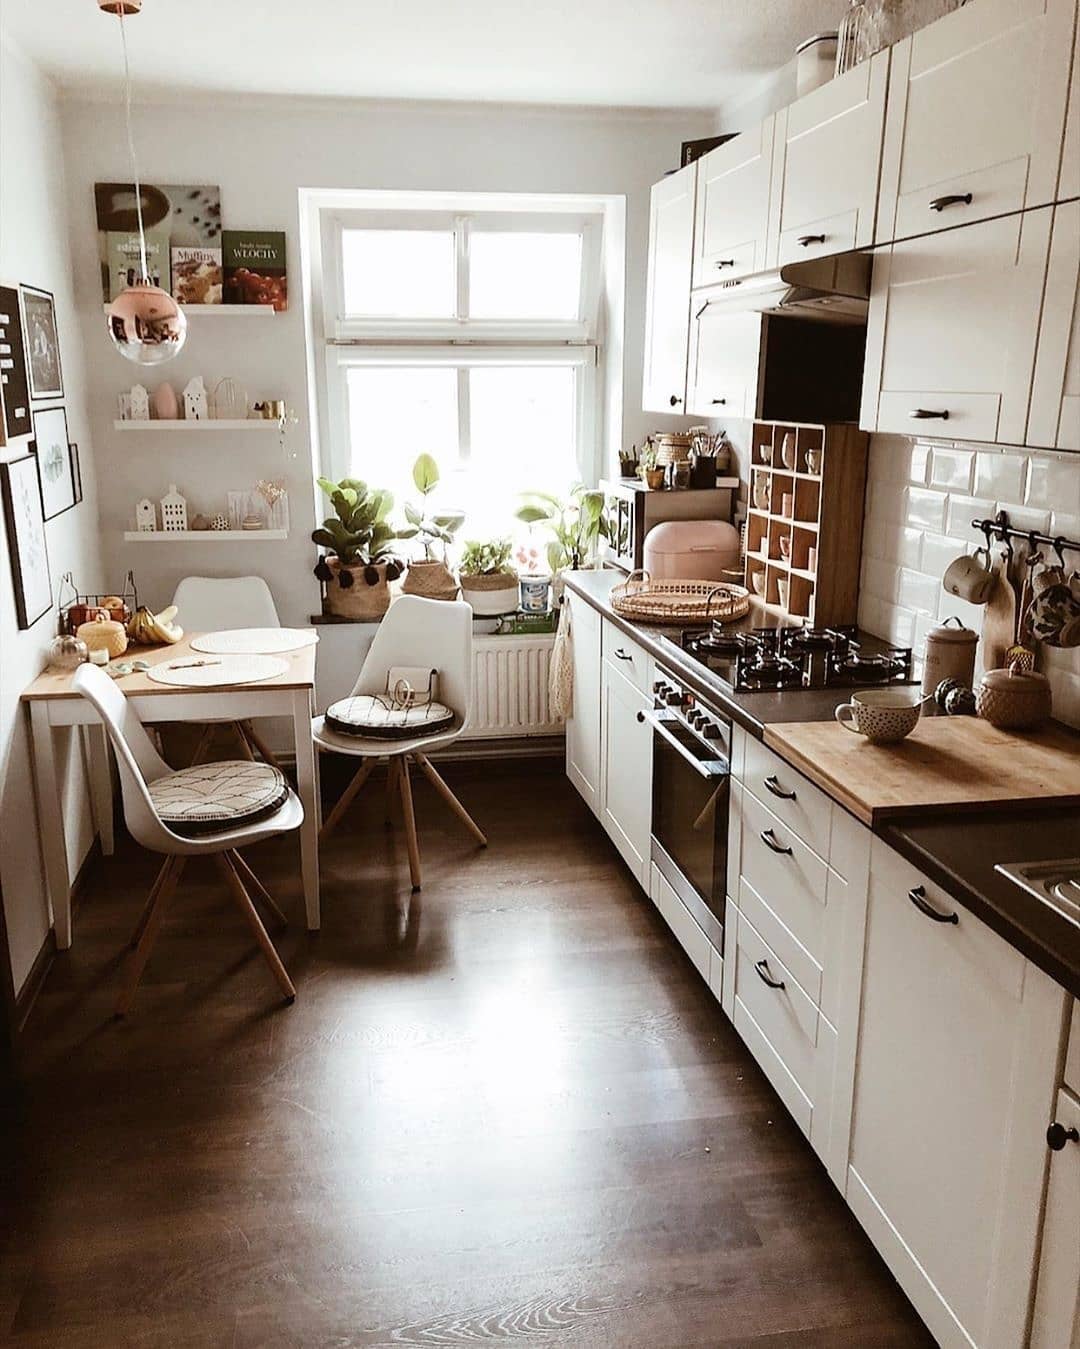 Desain Interior Dapur Minimalis Dengan Sentuhan Boho Chic Dan Perabotan Yang Terkesan Vintage Inspirasi Desain Rumah Terkini